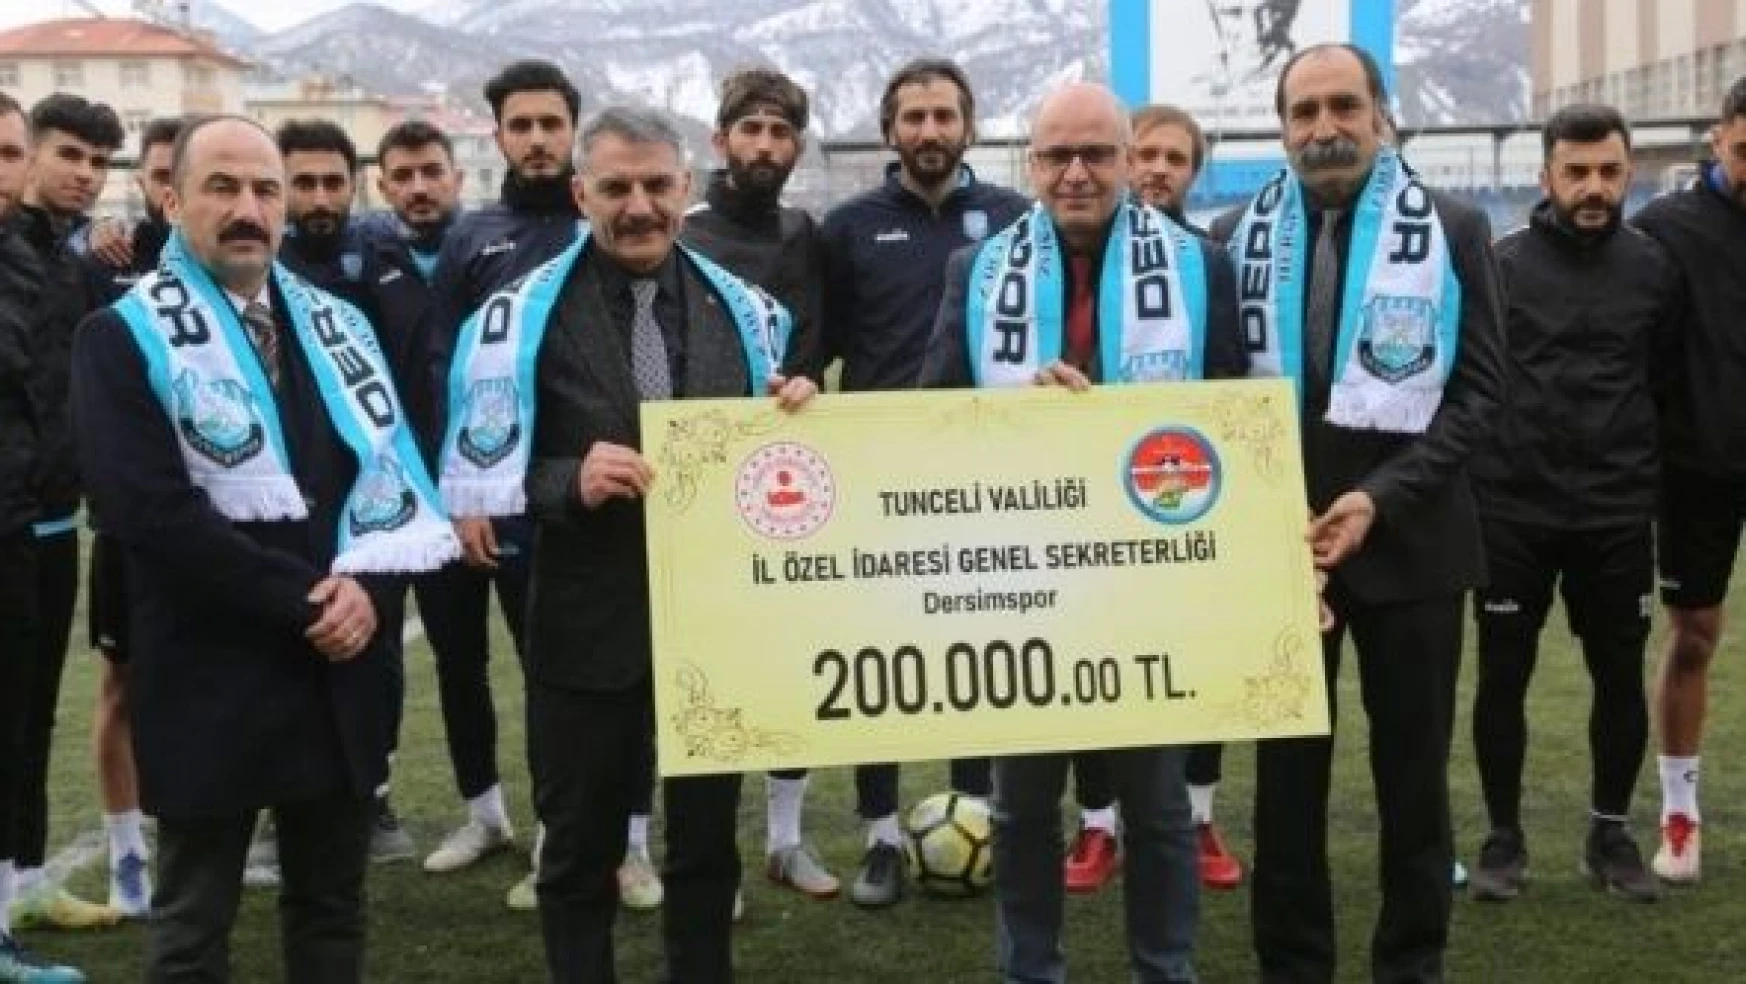 Tunceli Valiliğinden Dersimspor'a spor malzemesi desteği